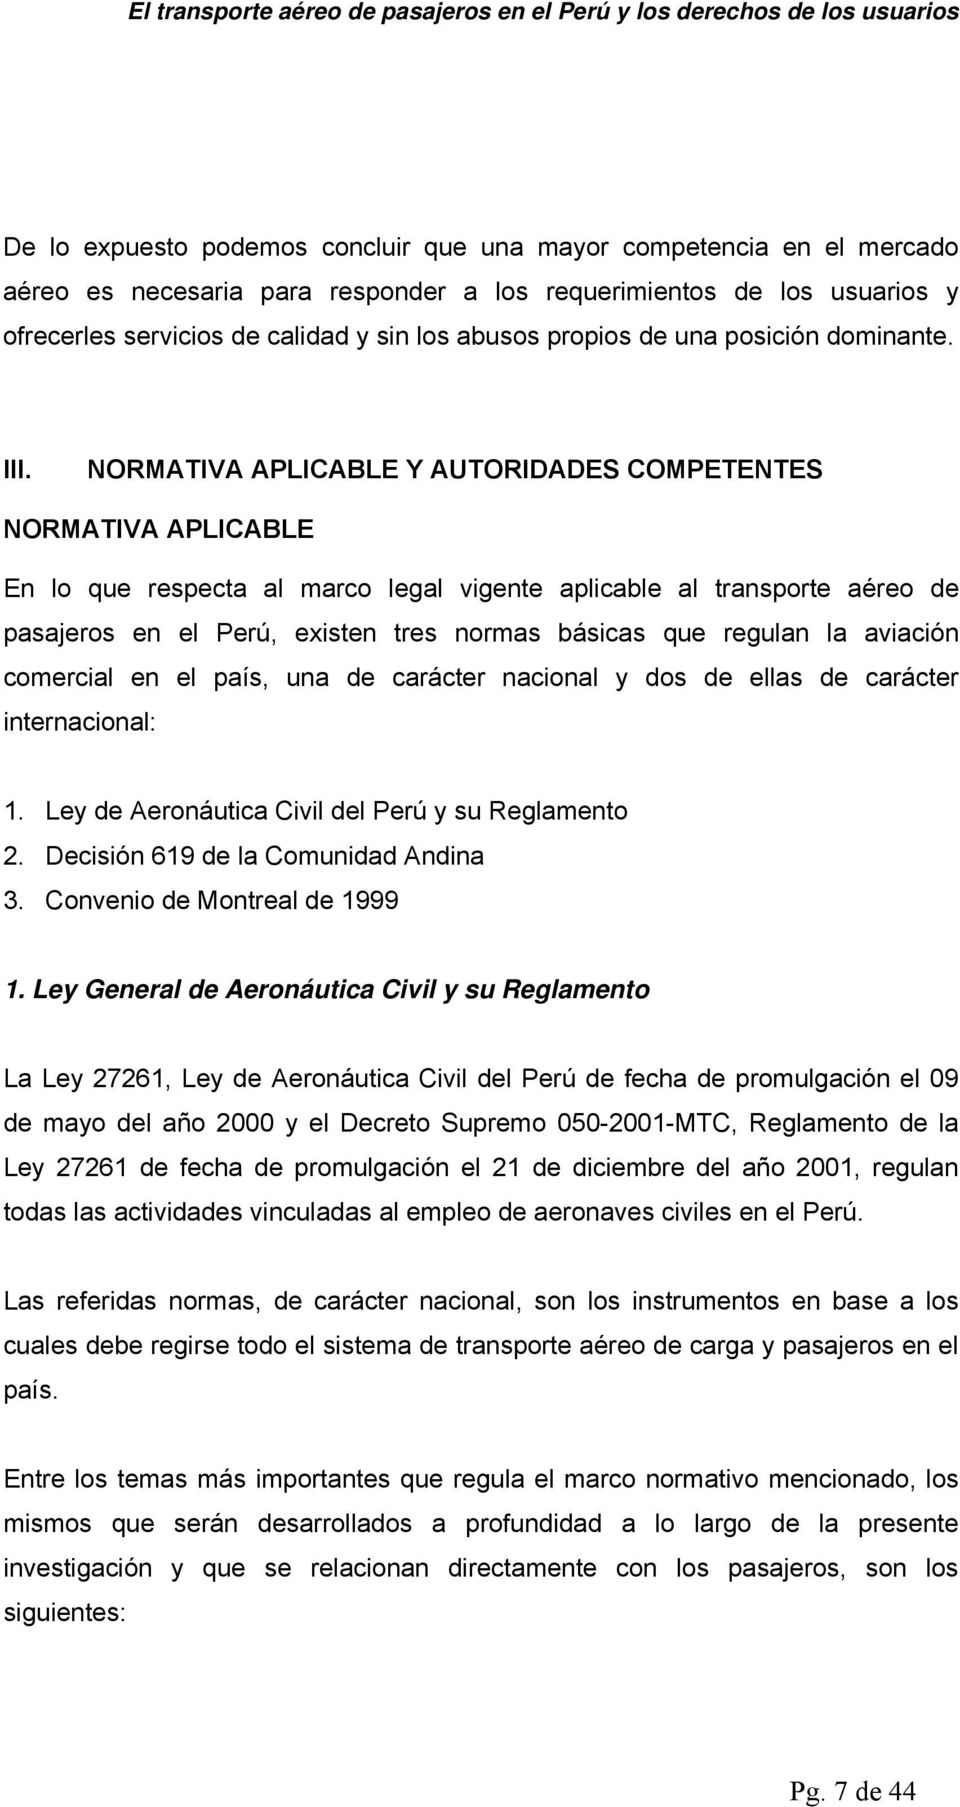 NORMATIVA APLICABLE Y AUTORIDADES COMPETENTES NORMATIVA APLICABLE En lo que respecta al marco legal vigente aplicable al transporte aéreo de pasajeros en el Perú, existen tres normas básicas que